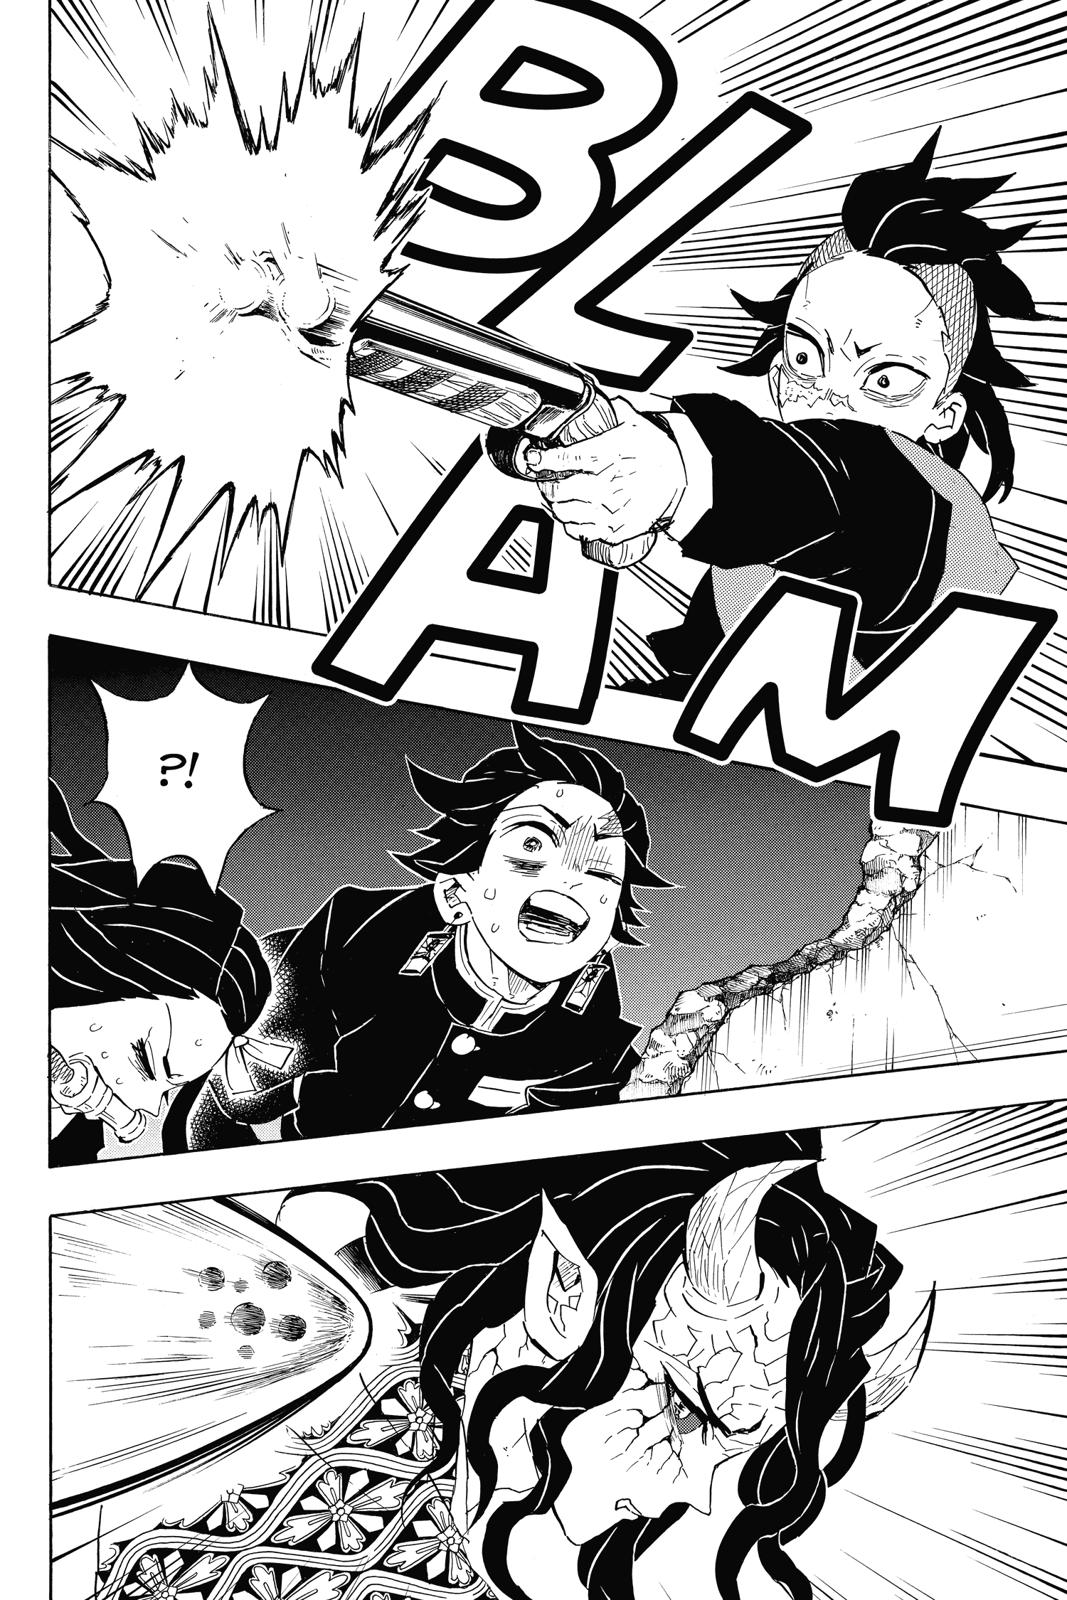 Demon Slayer Manga Manga Chapter - 107 - image 7